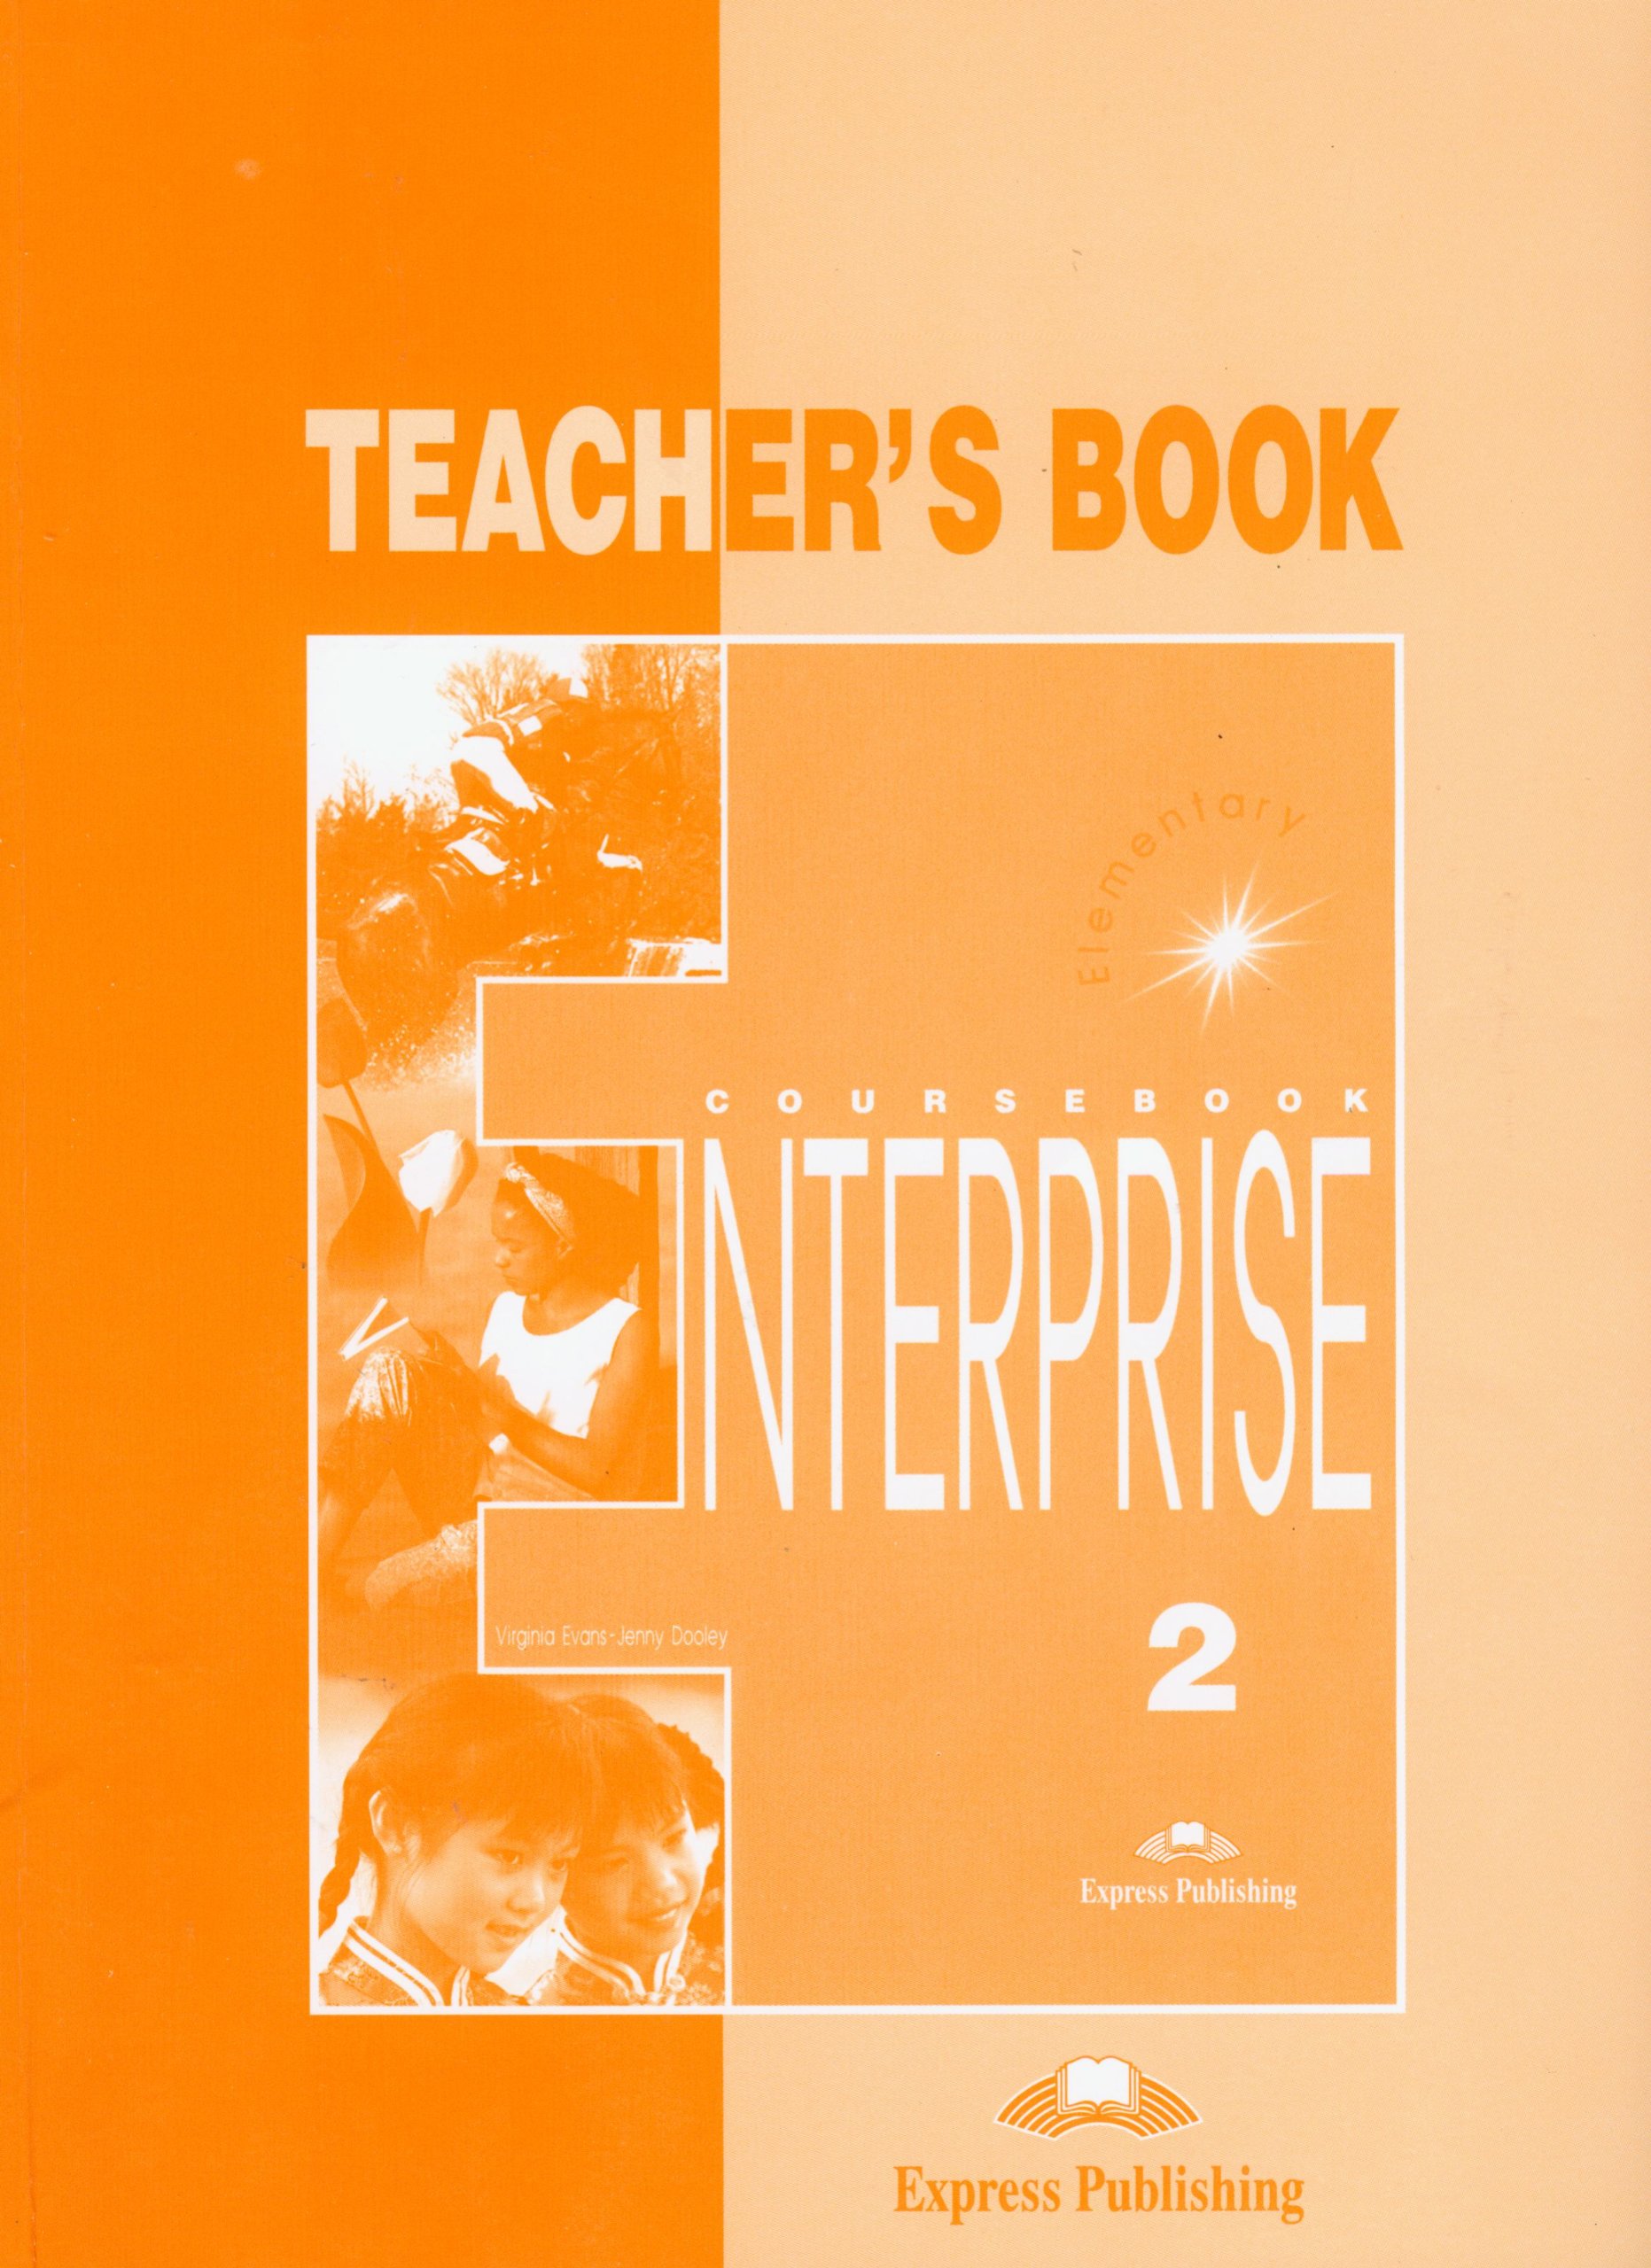 ENTERPRISE 2 Teacher's Book